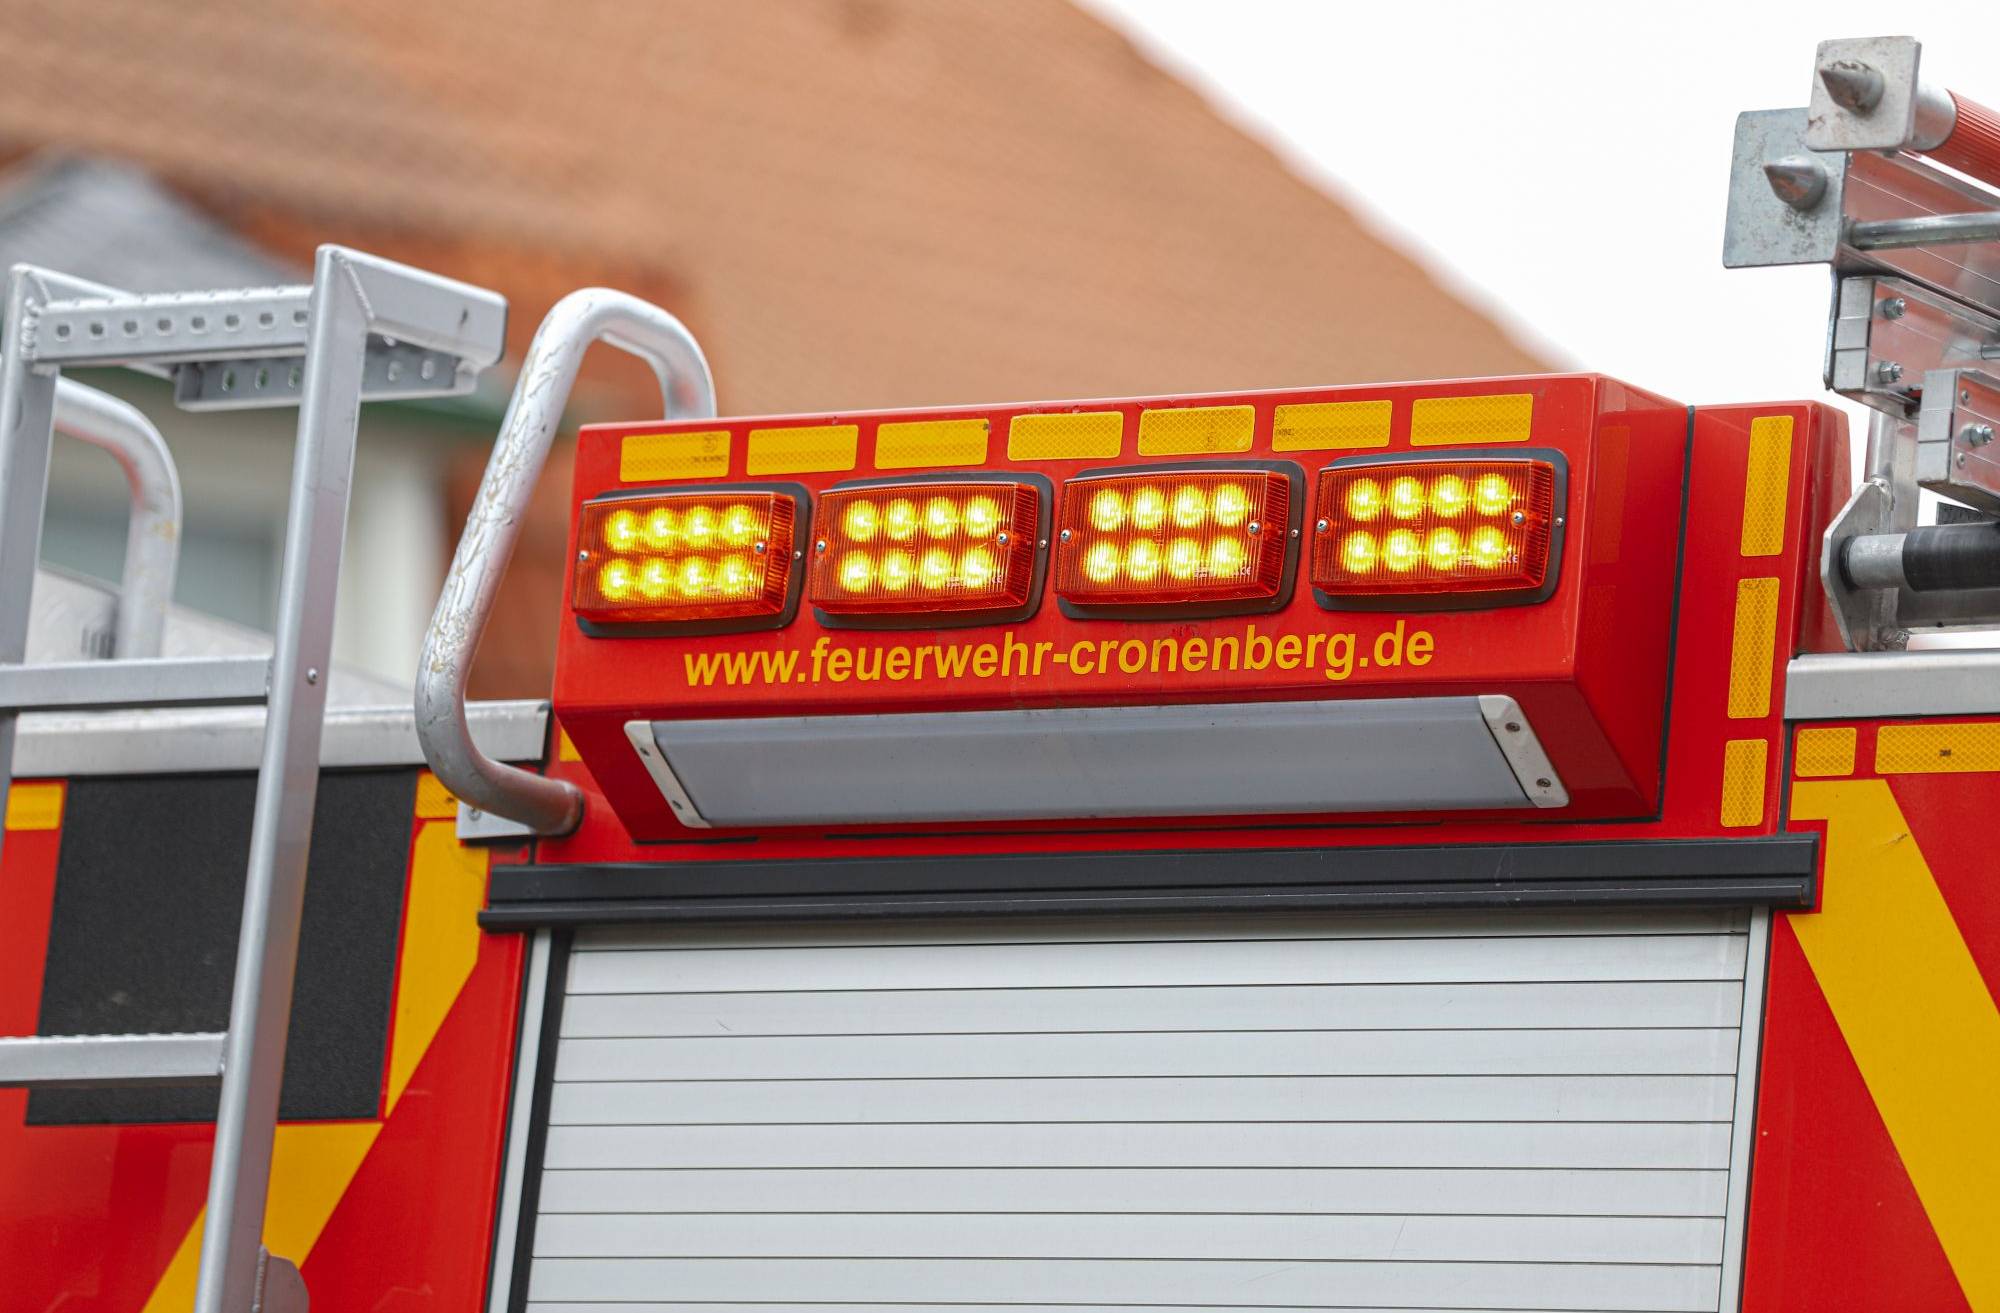 Kurioser Feuerwehr-Einsatz in Wuppertal-Cronenberg​